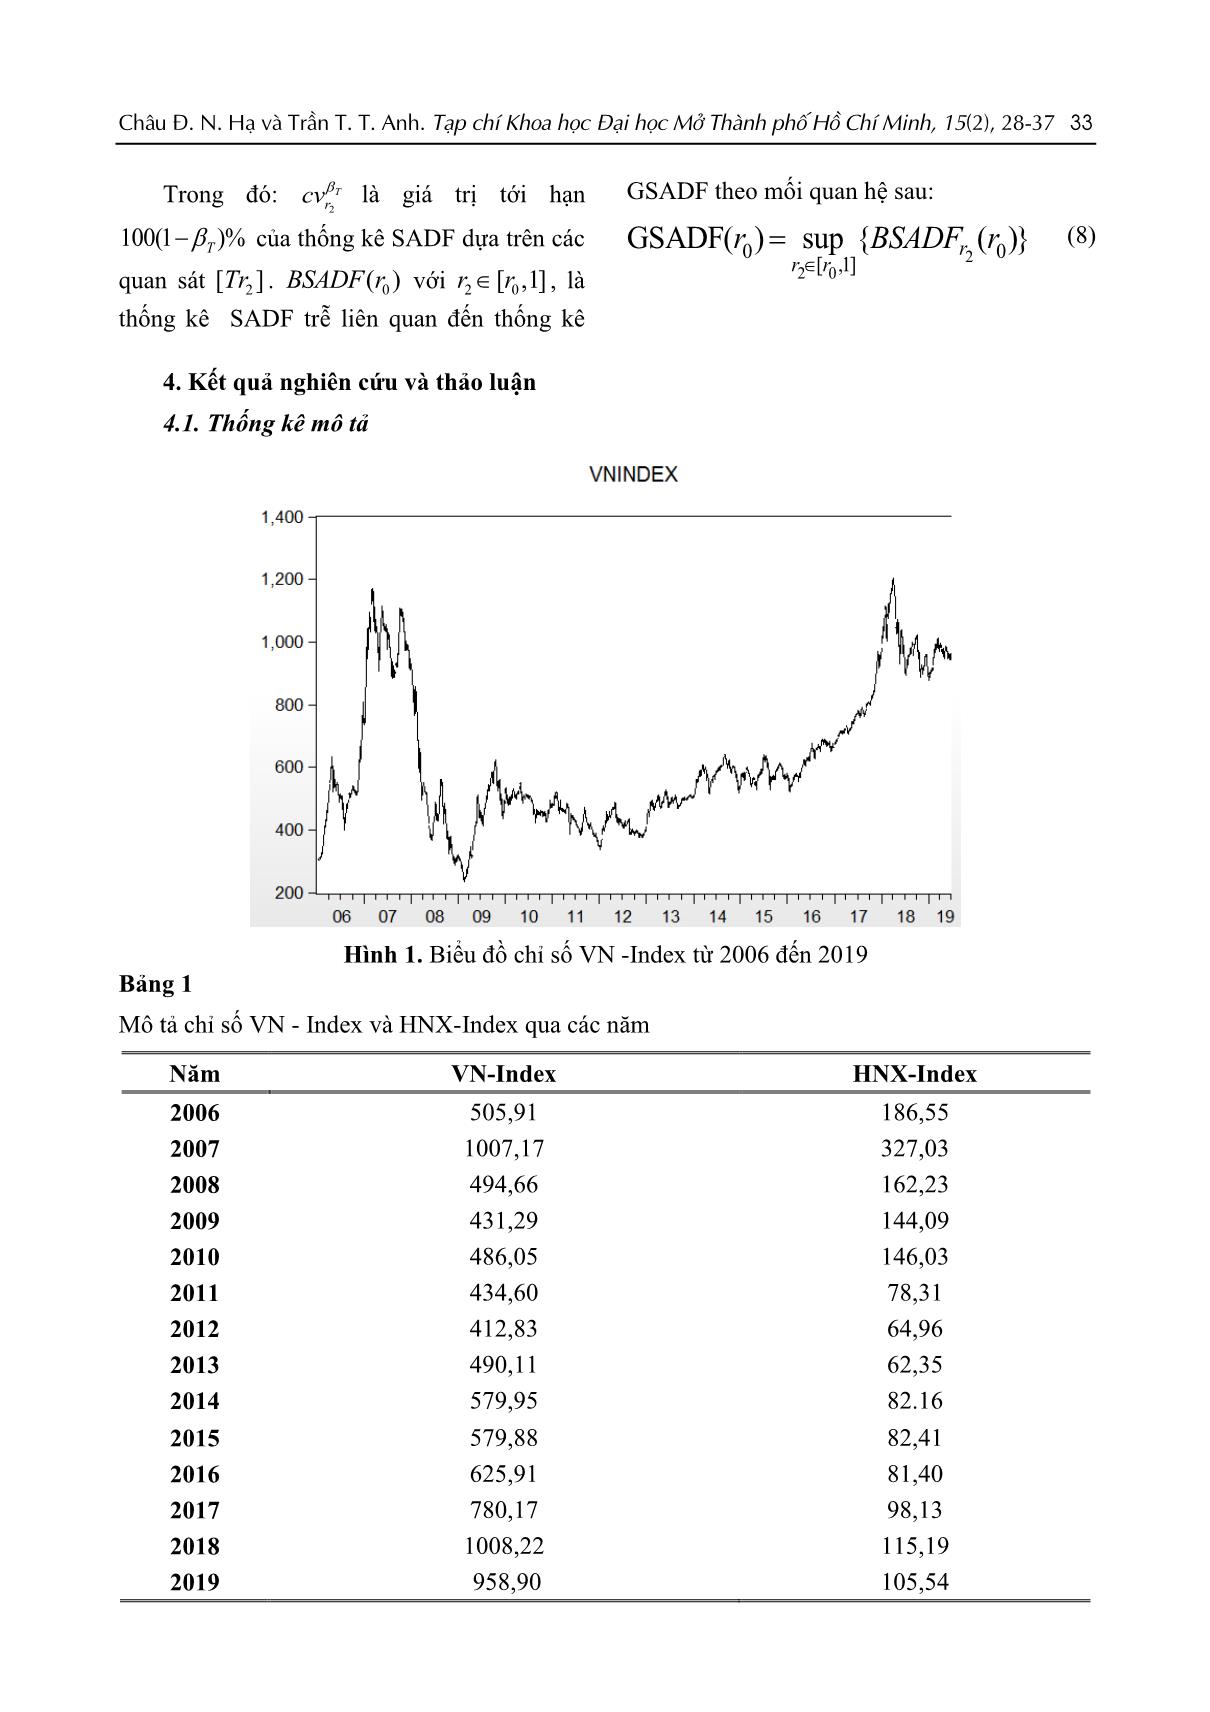 Kiểm định sự hiện diện của bong bóng trên thị trường chứng khoán Việt Nam giai đoạn từ 2006 đến 2019 trang 6